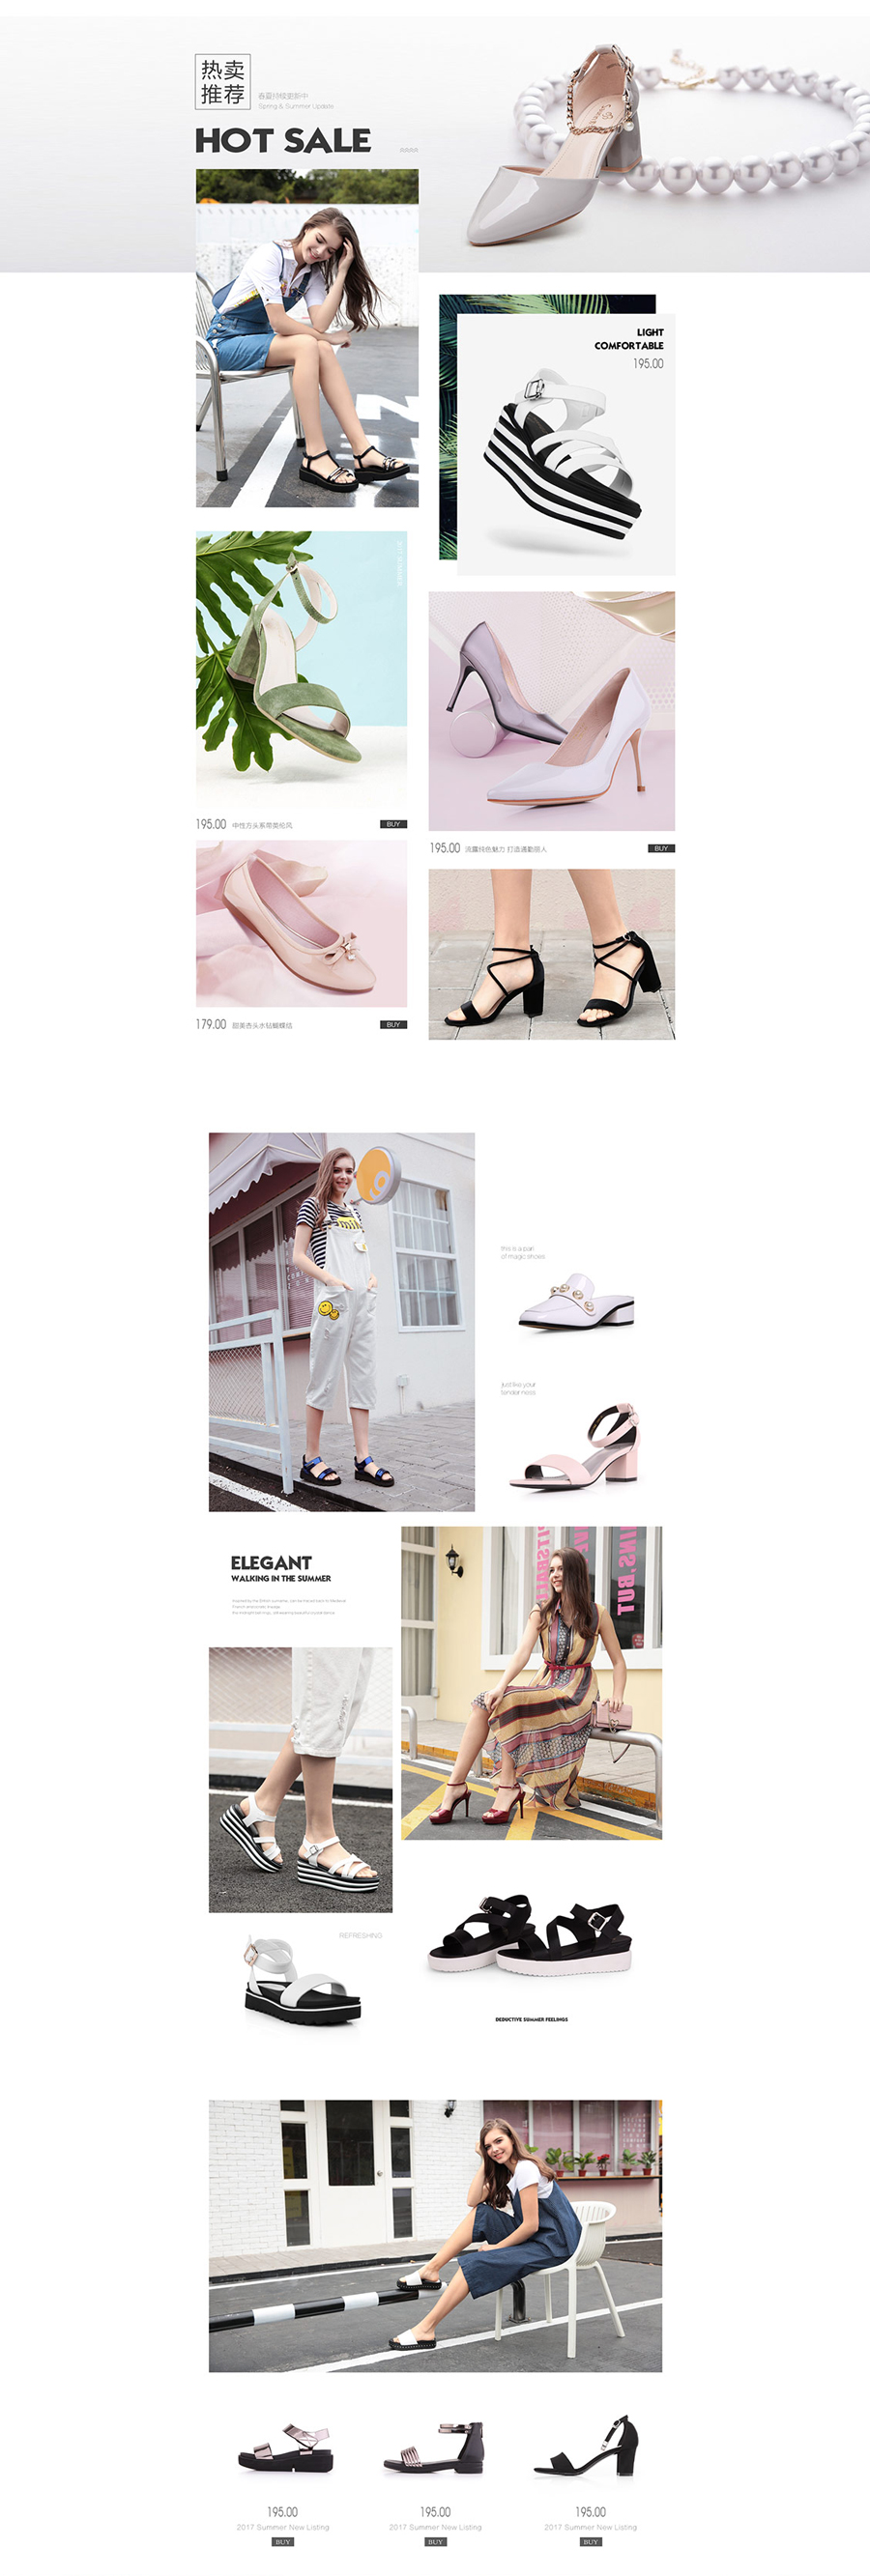 包包活动专题页面设计案例,女鞋专题页面设计案例,索兰女鞋包包活动专题页面设计案例